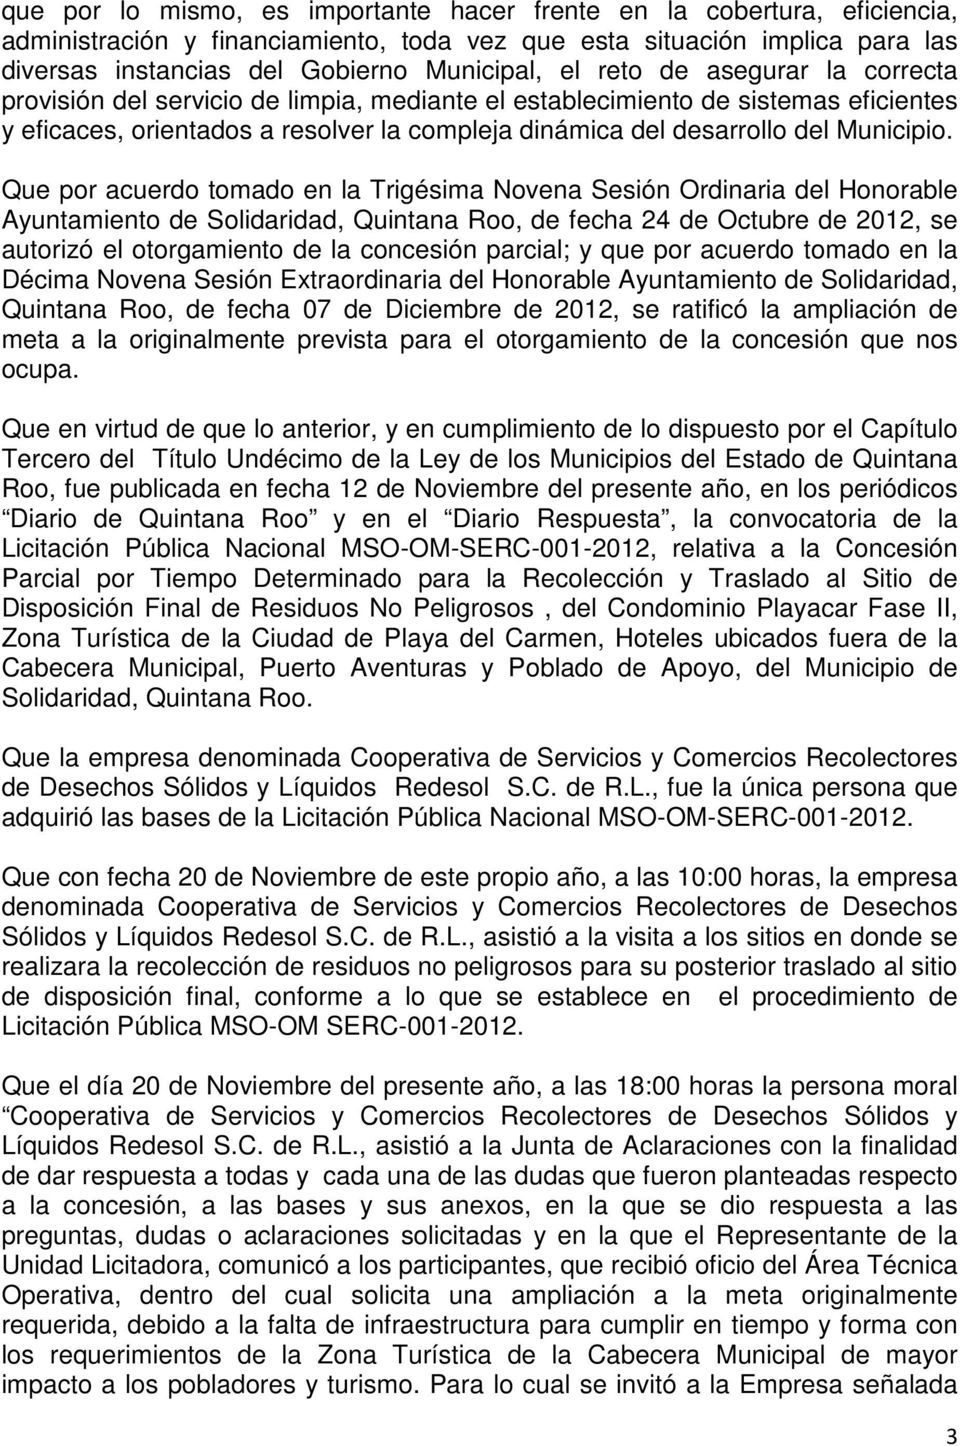 Que por acuerdo tomado en la Trigésima Novena Sesión Ordinaria del Honorable Ayuntamiento de Solidaridad, Quintana Roo, de fecha 24 de Octubre de 2012, se autorizó el otorgamiento de la concesión